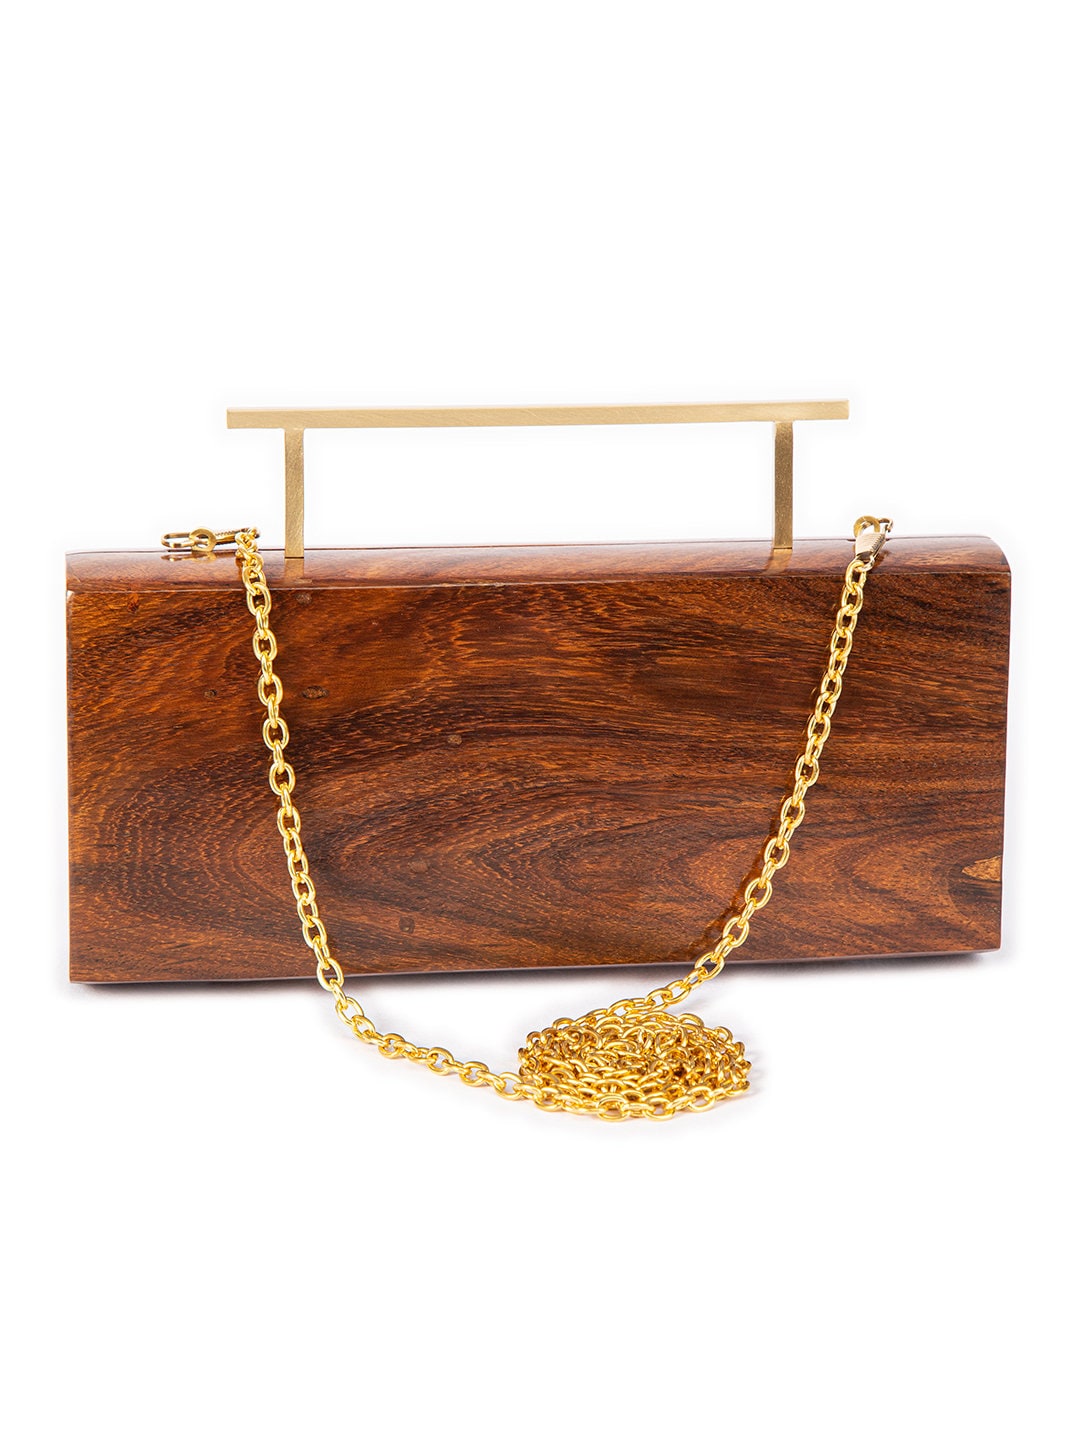 Rectangular Solid Brown Handcrafted Wooden Sling Bag - Elegant Natural Wood Clutch